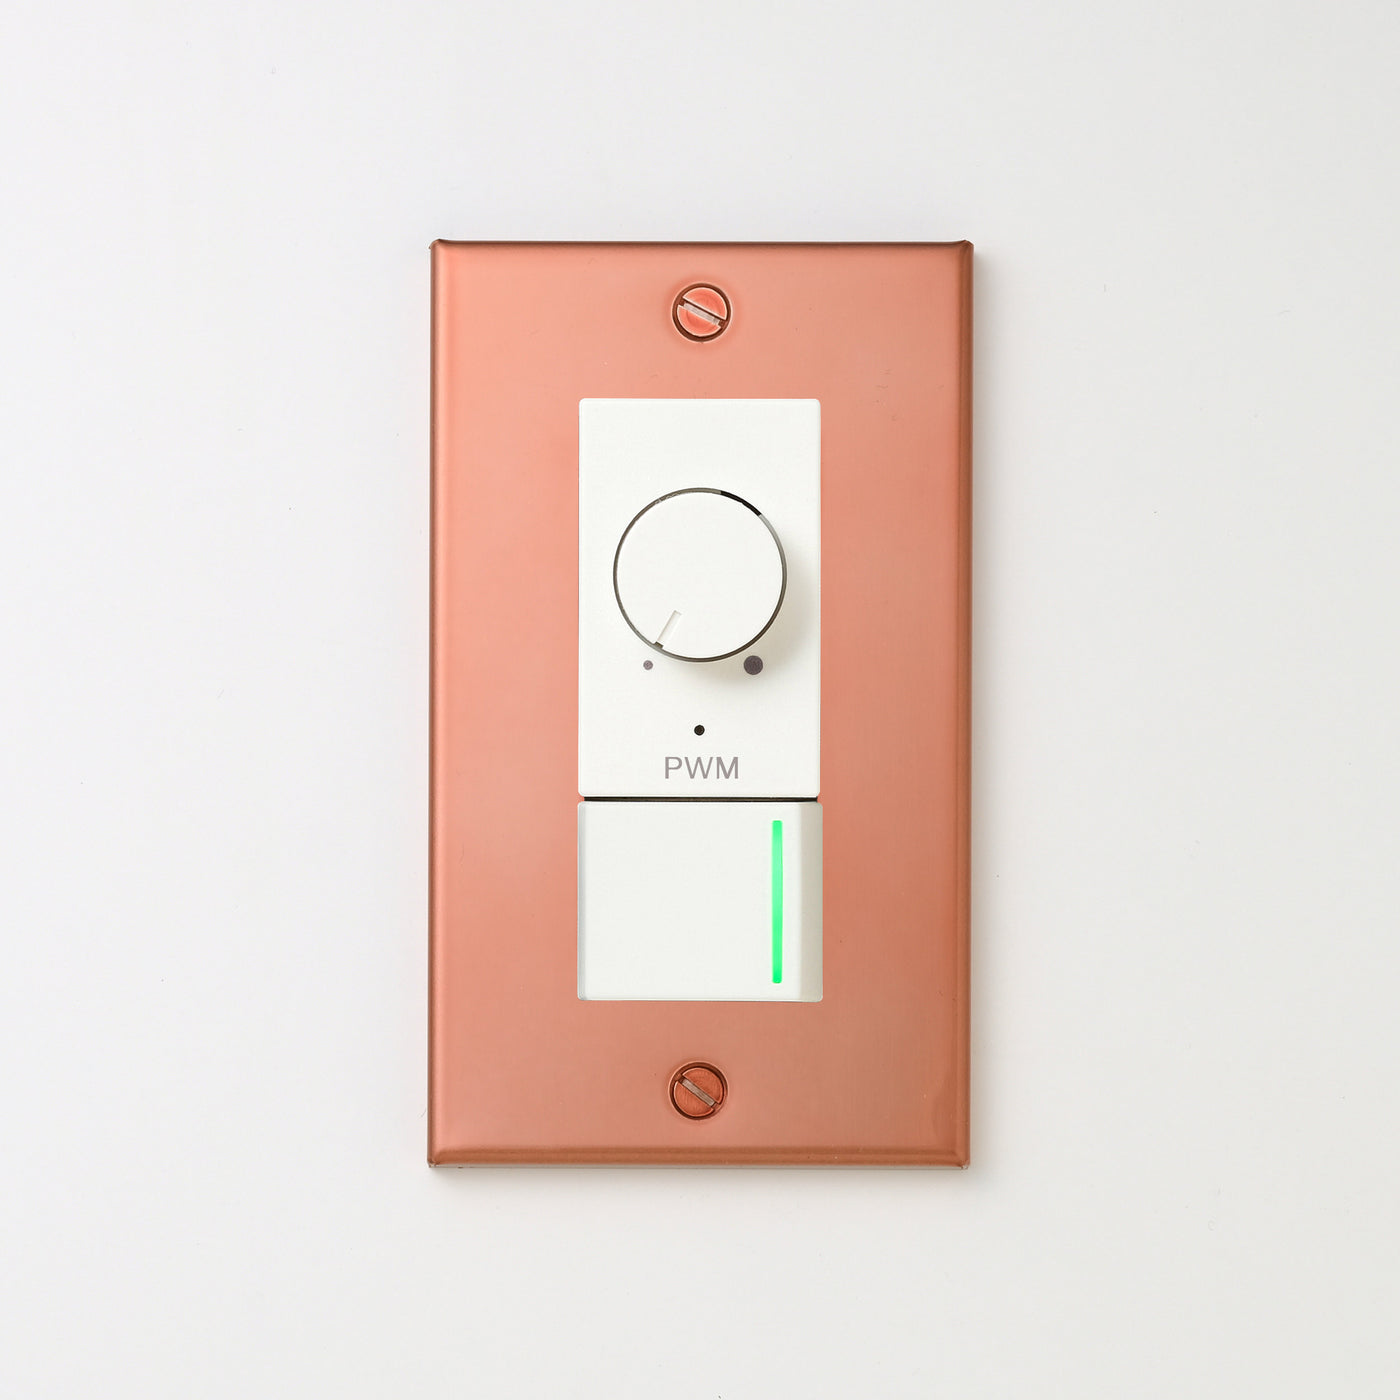 銅色（マット） プレート <br>+ NK PWM制御方式(1ch)ライトコントロール＋片切、3路ガイドランプ（グリーン）スイッチ　 ホワイト